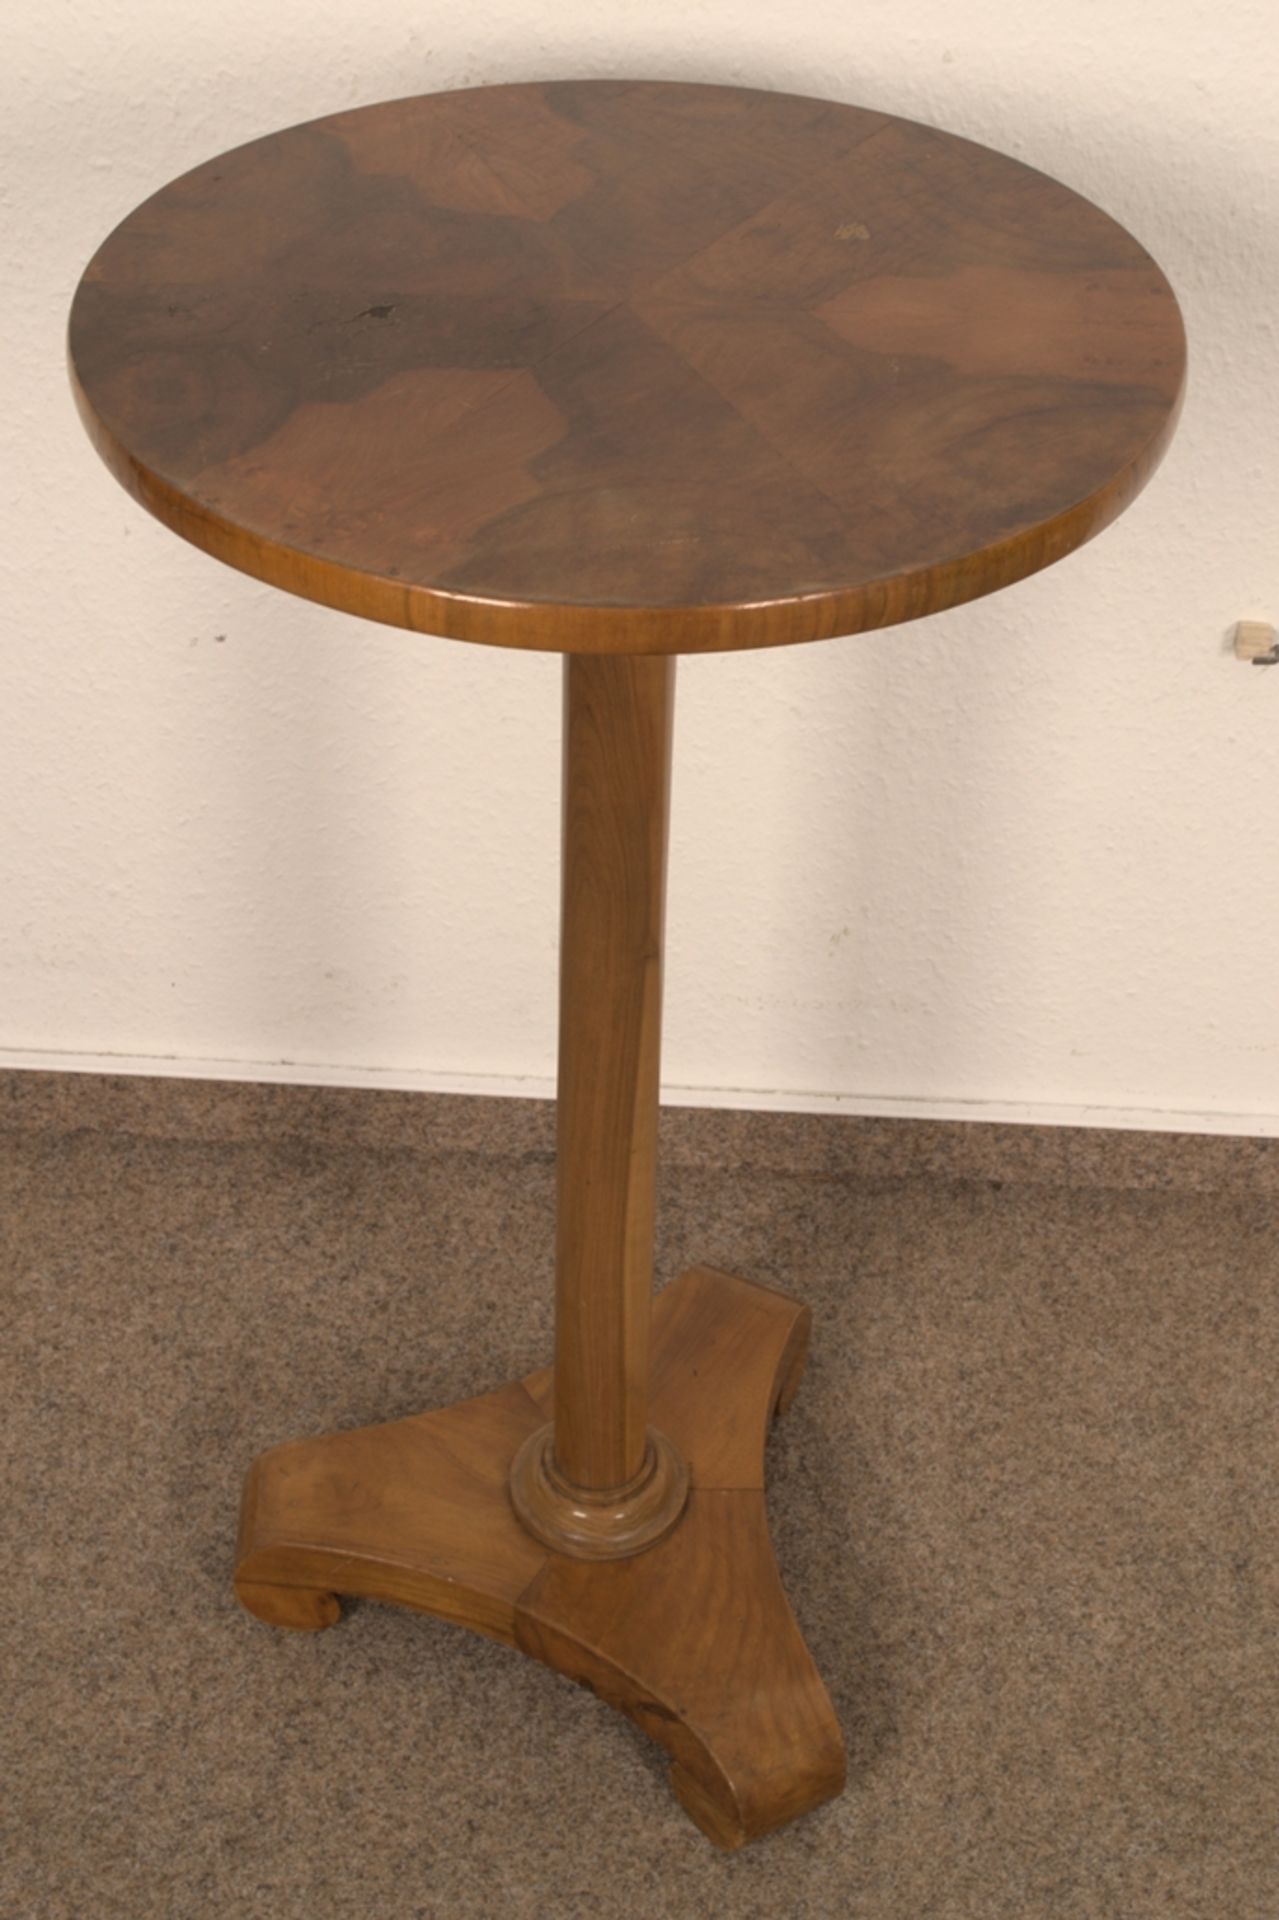 Rundes Lampentischchen, Biedermeier-Stil 19./20. Jhd., Höhe ca. 75 cm, Durchmesser ca. 42 cm.